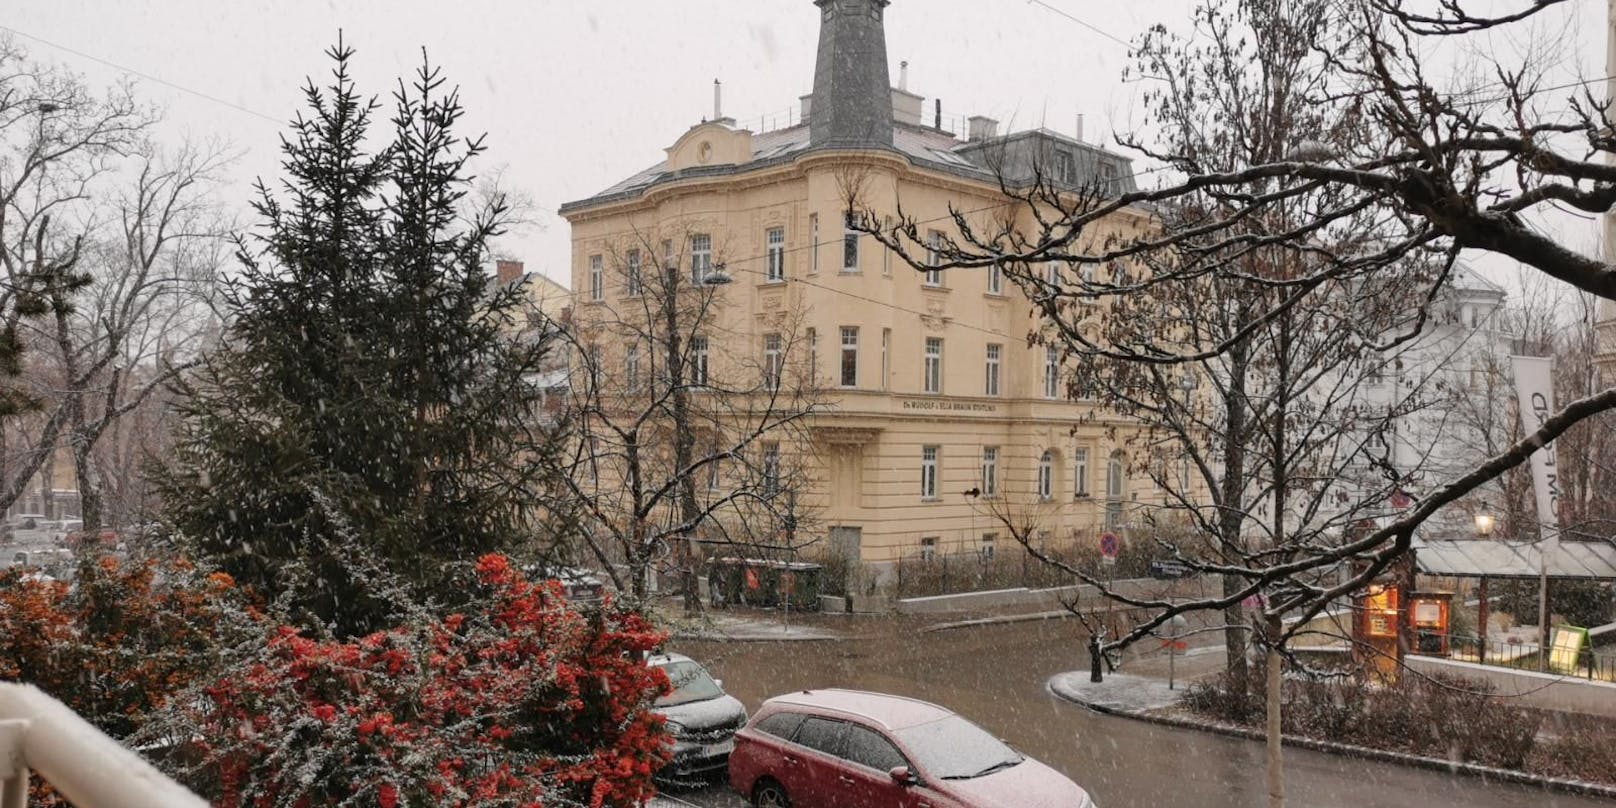 Am späten Nachmittag hat es in Wien zu schneien begonnen.